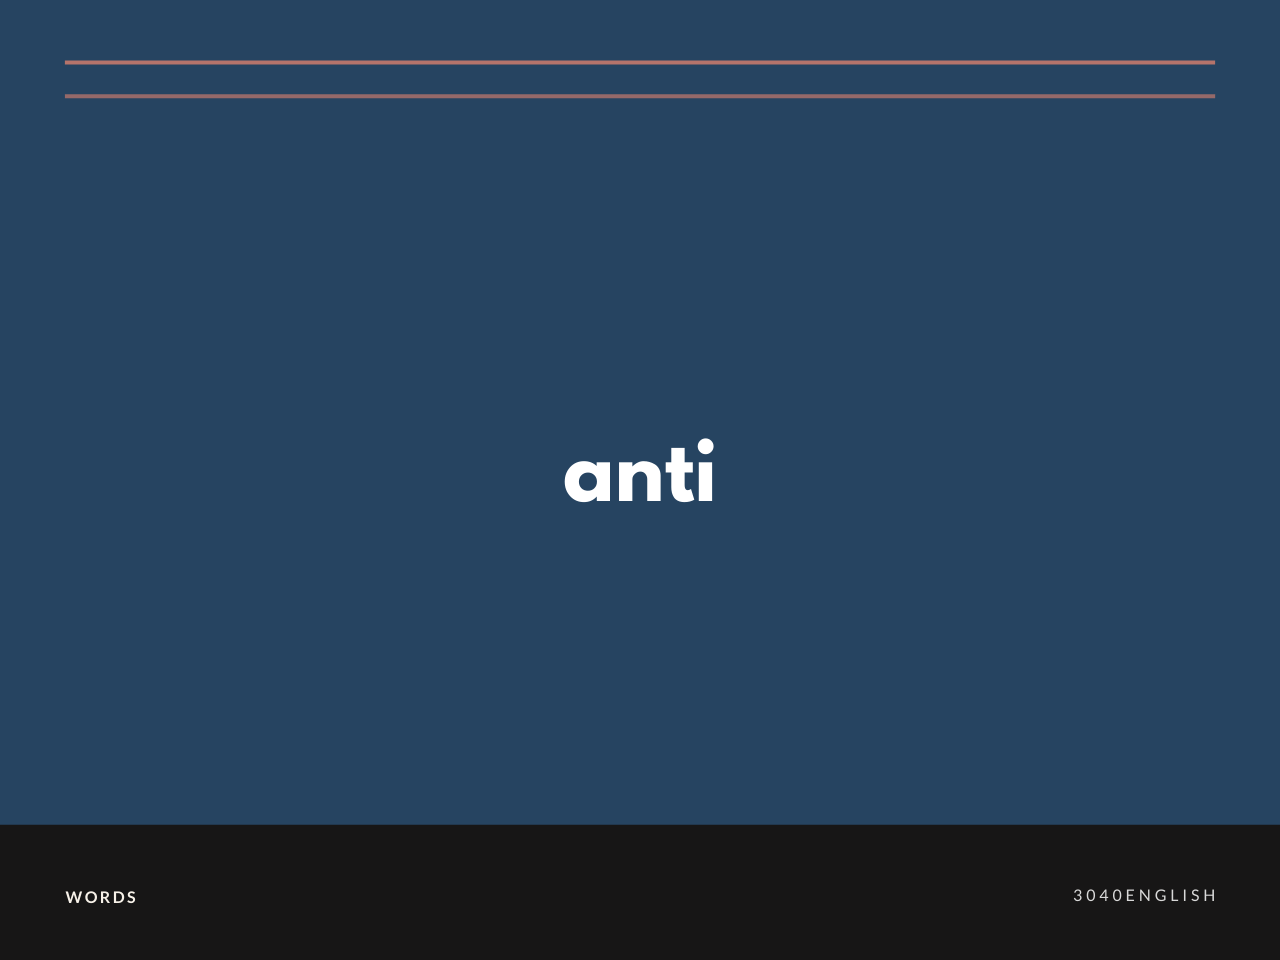 アンチ Anti の意味と簡単な使い方 発音 英語表現 例文あり 30代40代で身につける英会話